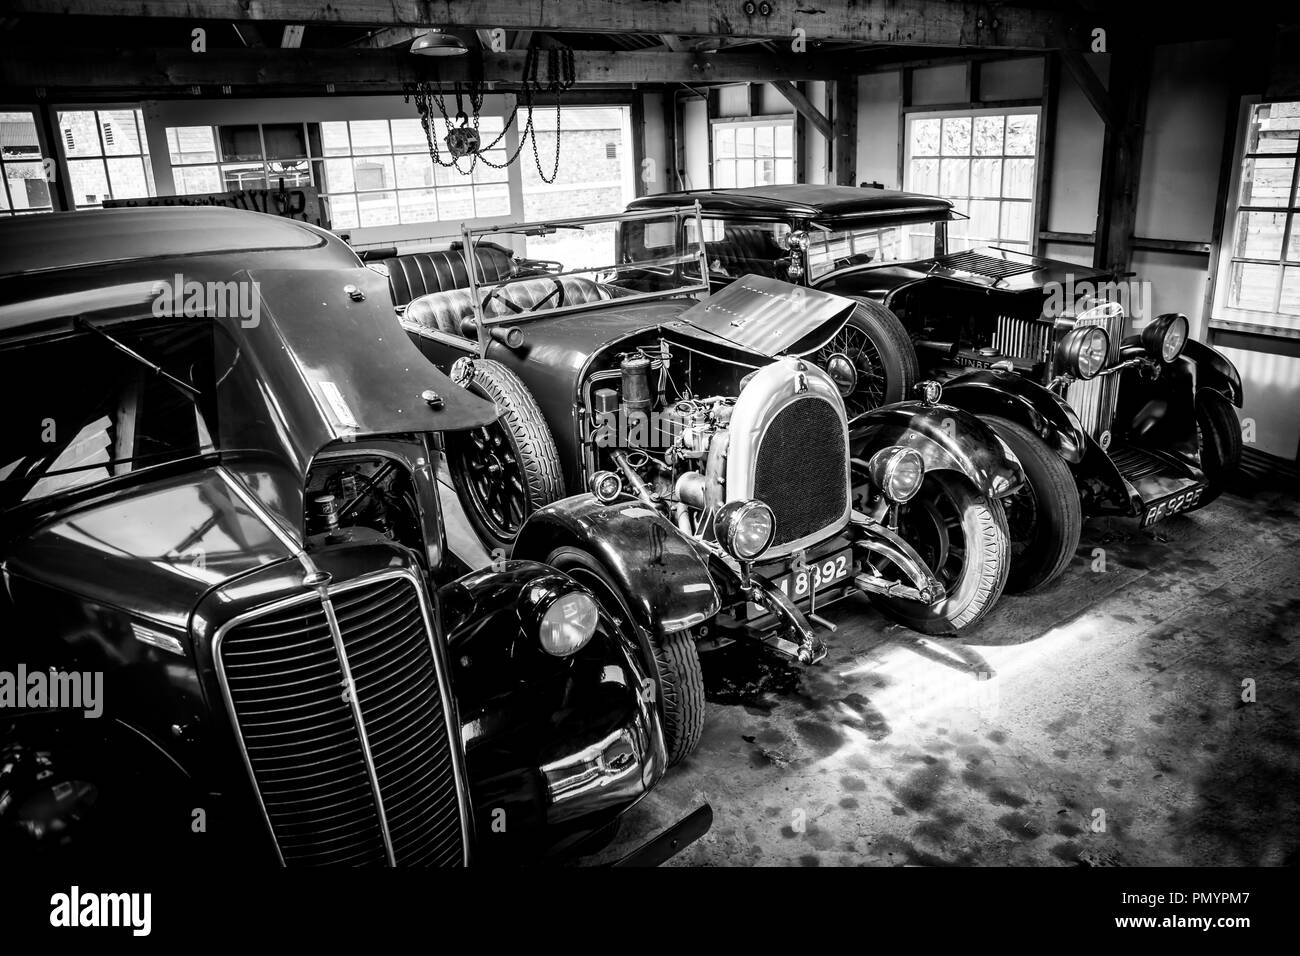 Vista arty, in bianco e nero di auto classiche d'epoca parcheggiate, fianco a fianco, in esposizione in un garage aperto, preso da un'angolazione elevata. Foto Stock